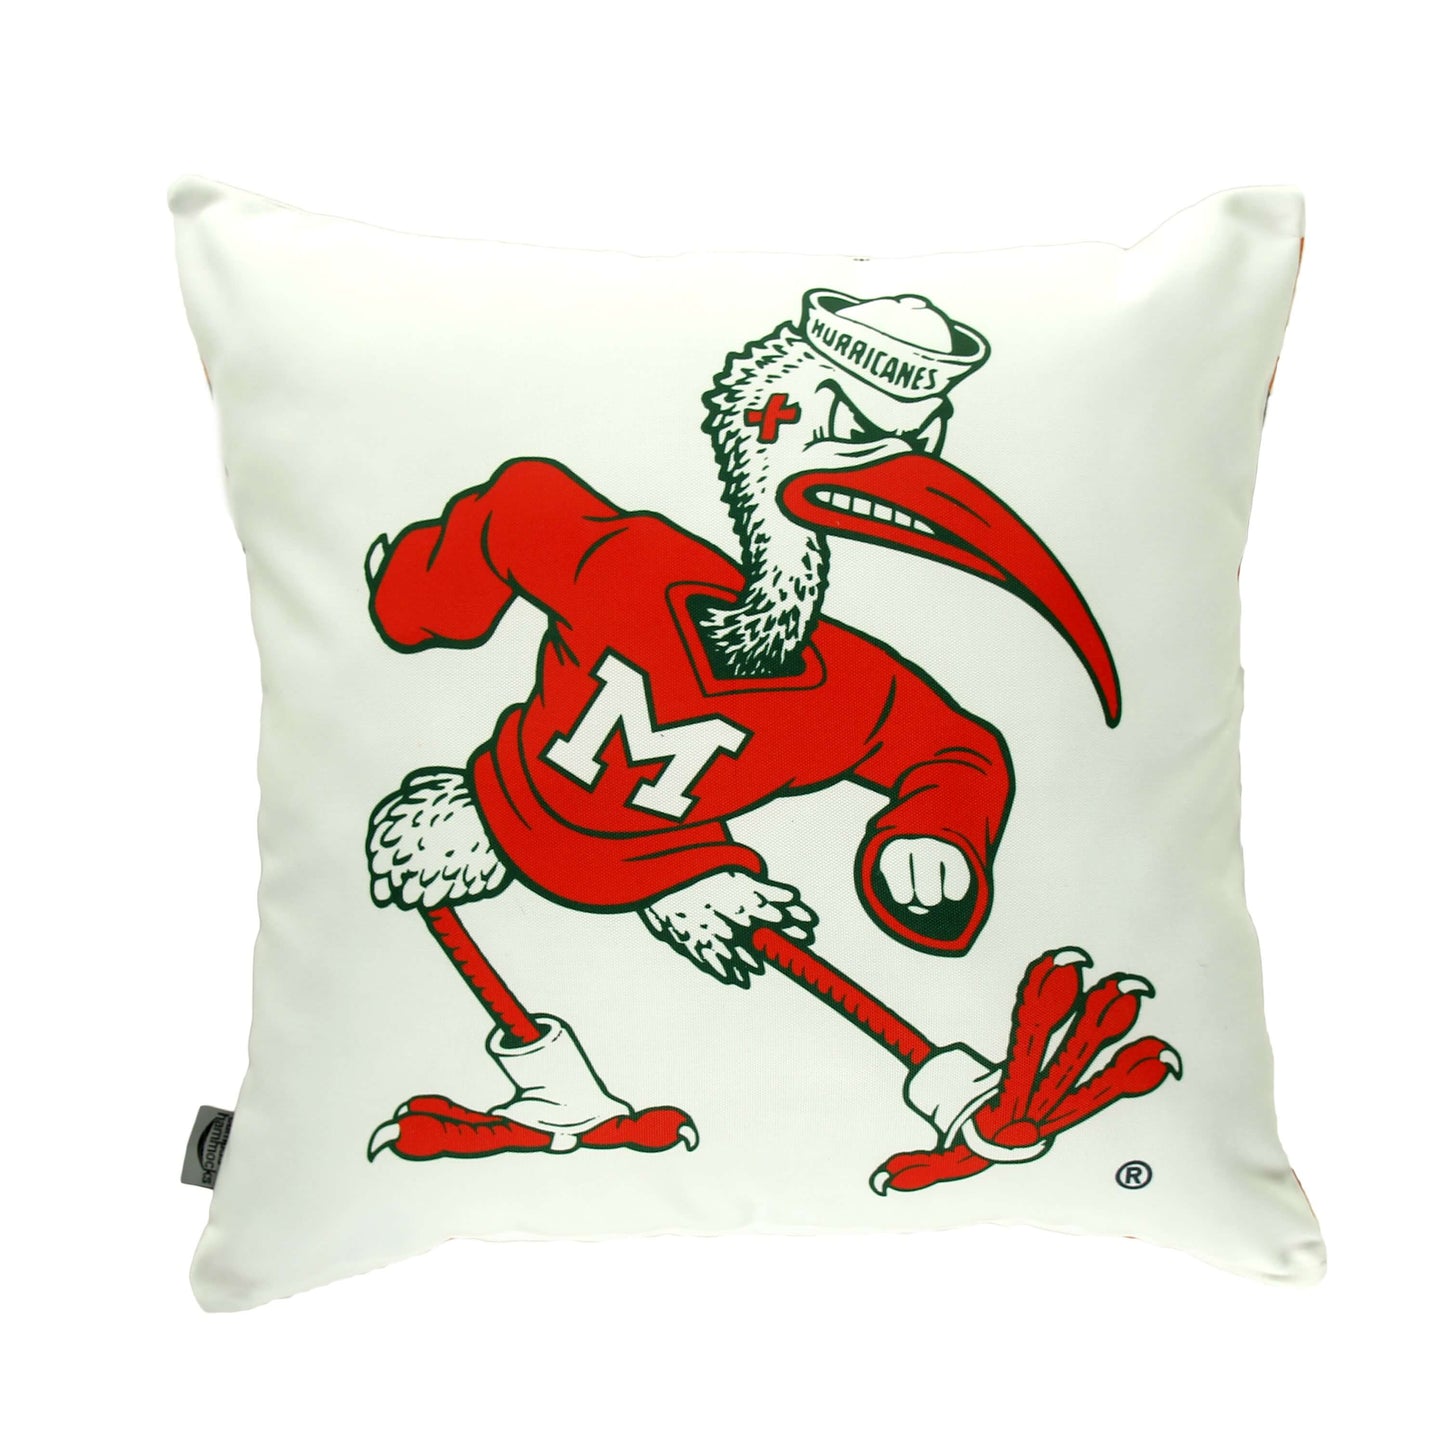 Miami hurricanes Ibis mascot pillow